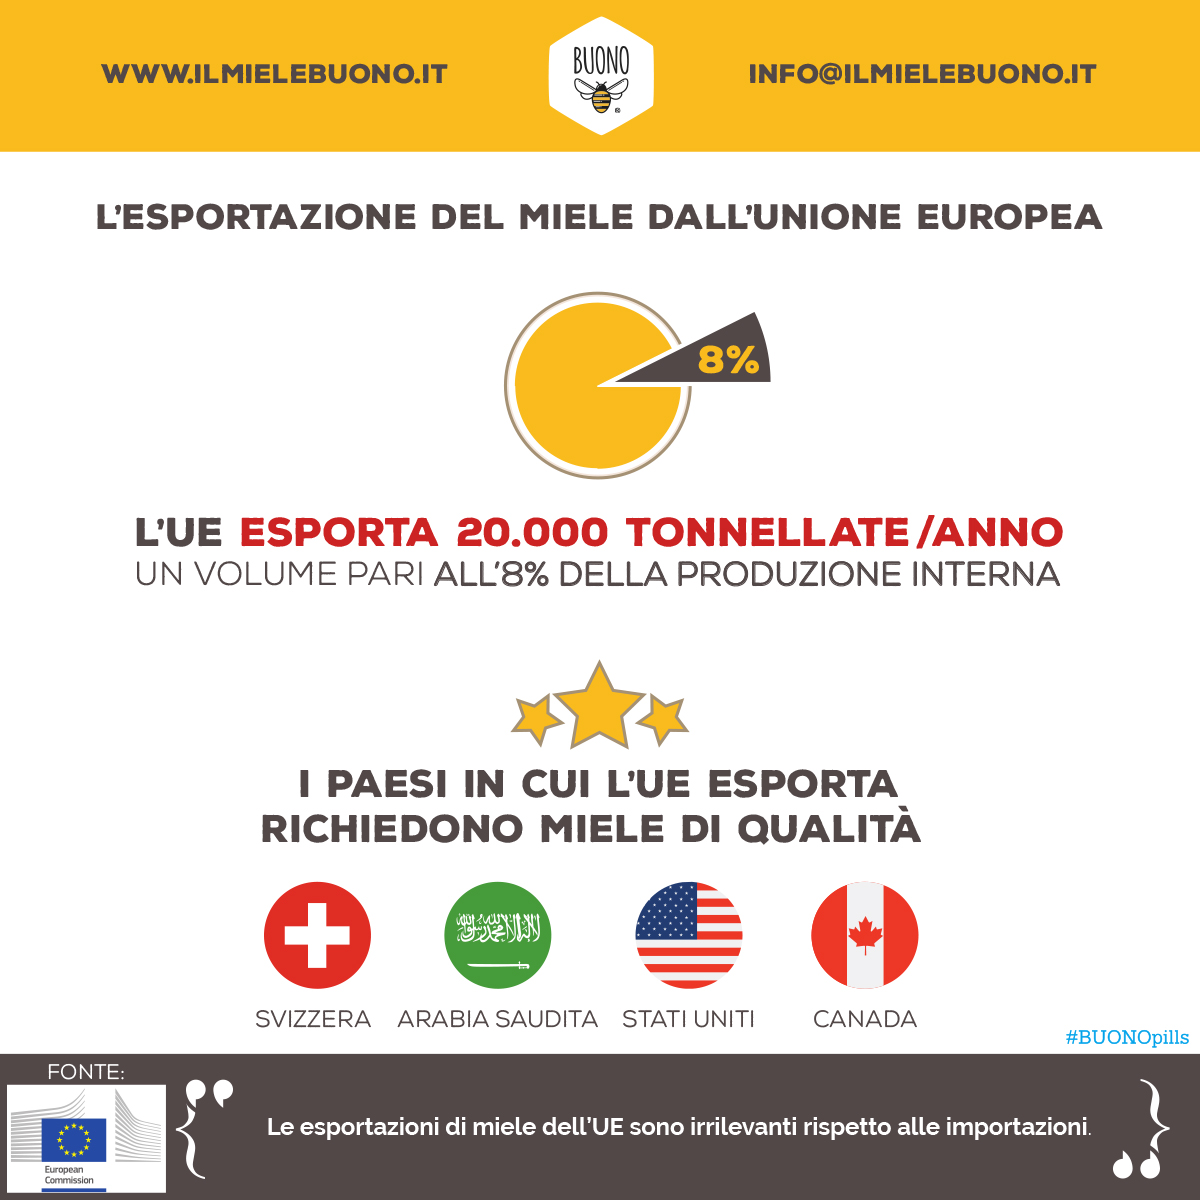 Esportazione di miele dall'Unione Europea